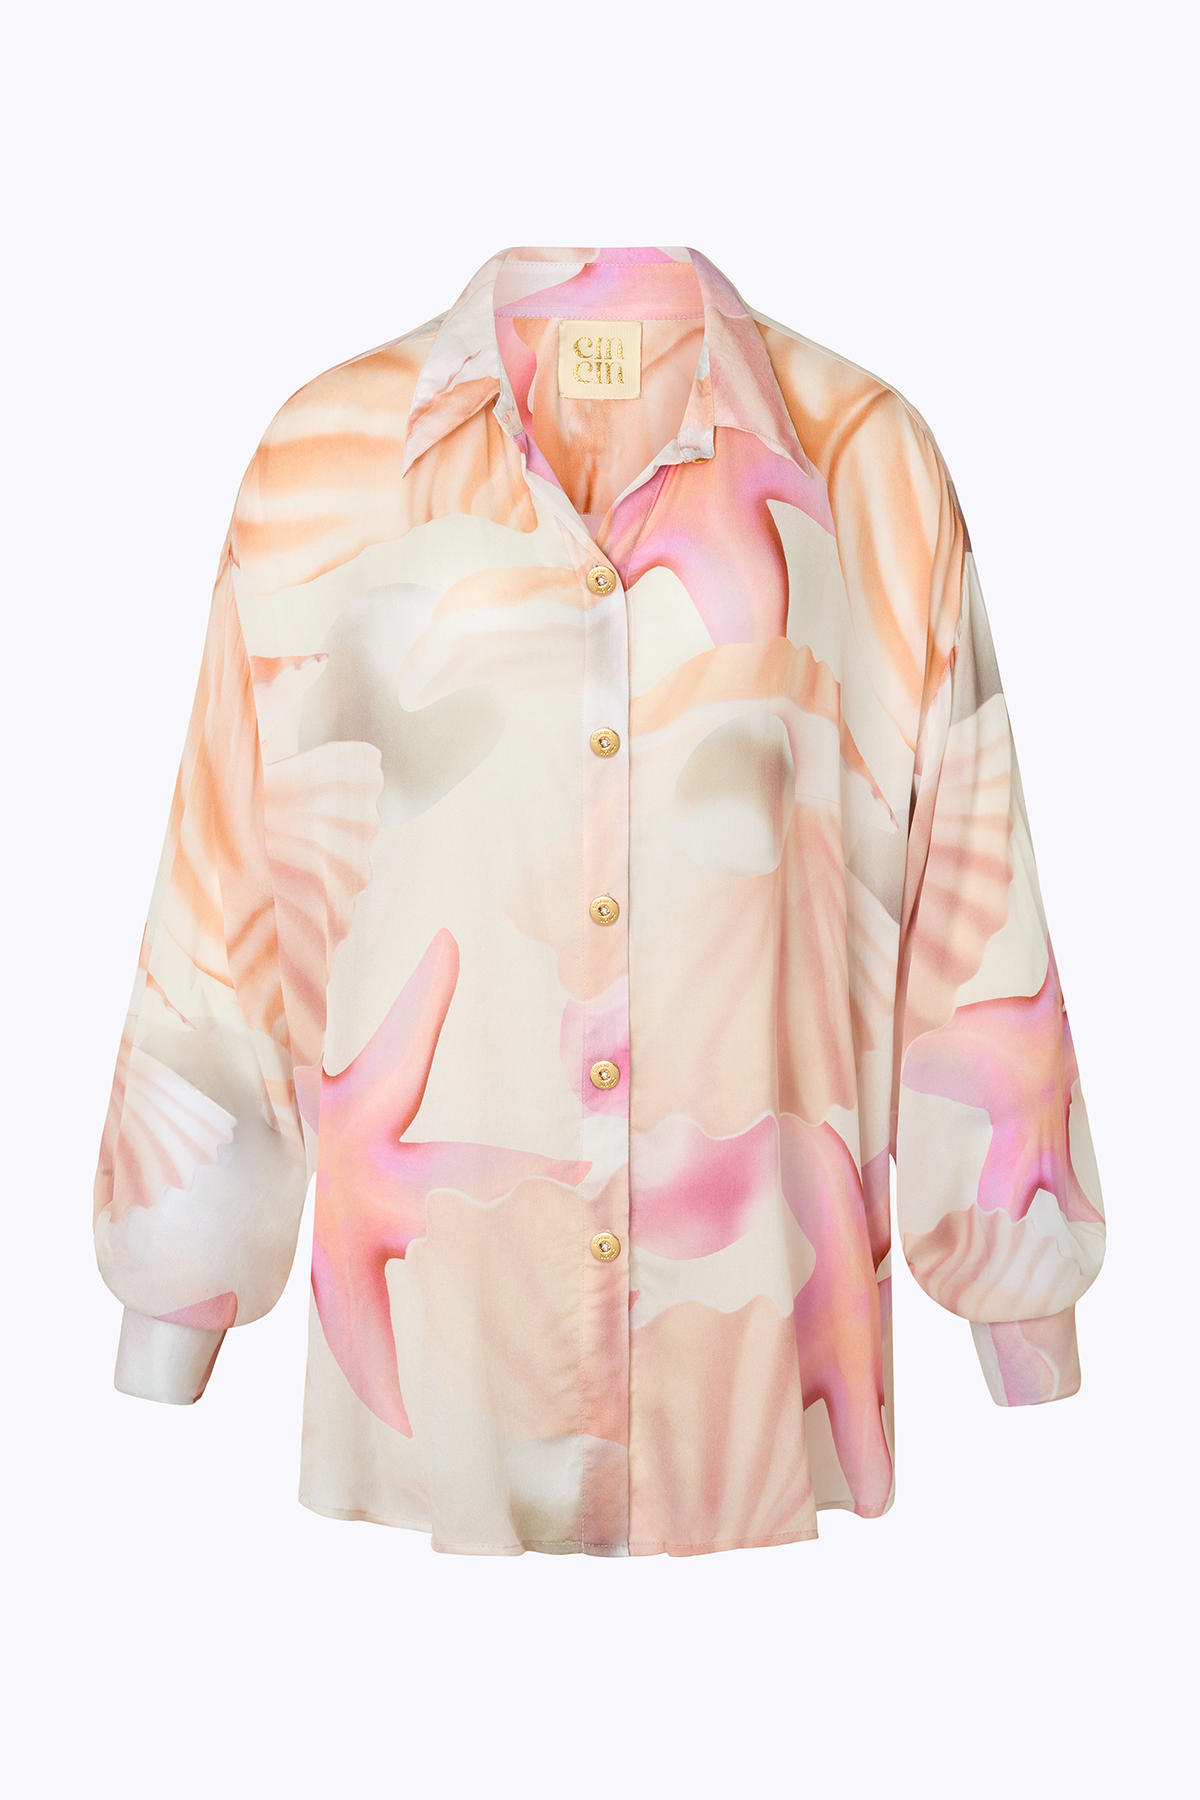 'Muse' Shirt - Tahiti Pink